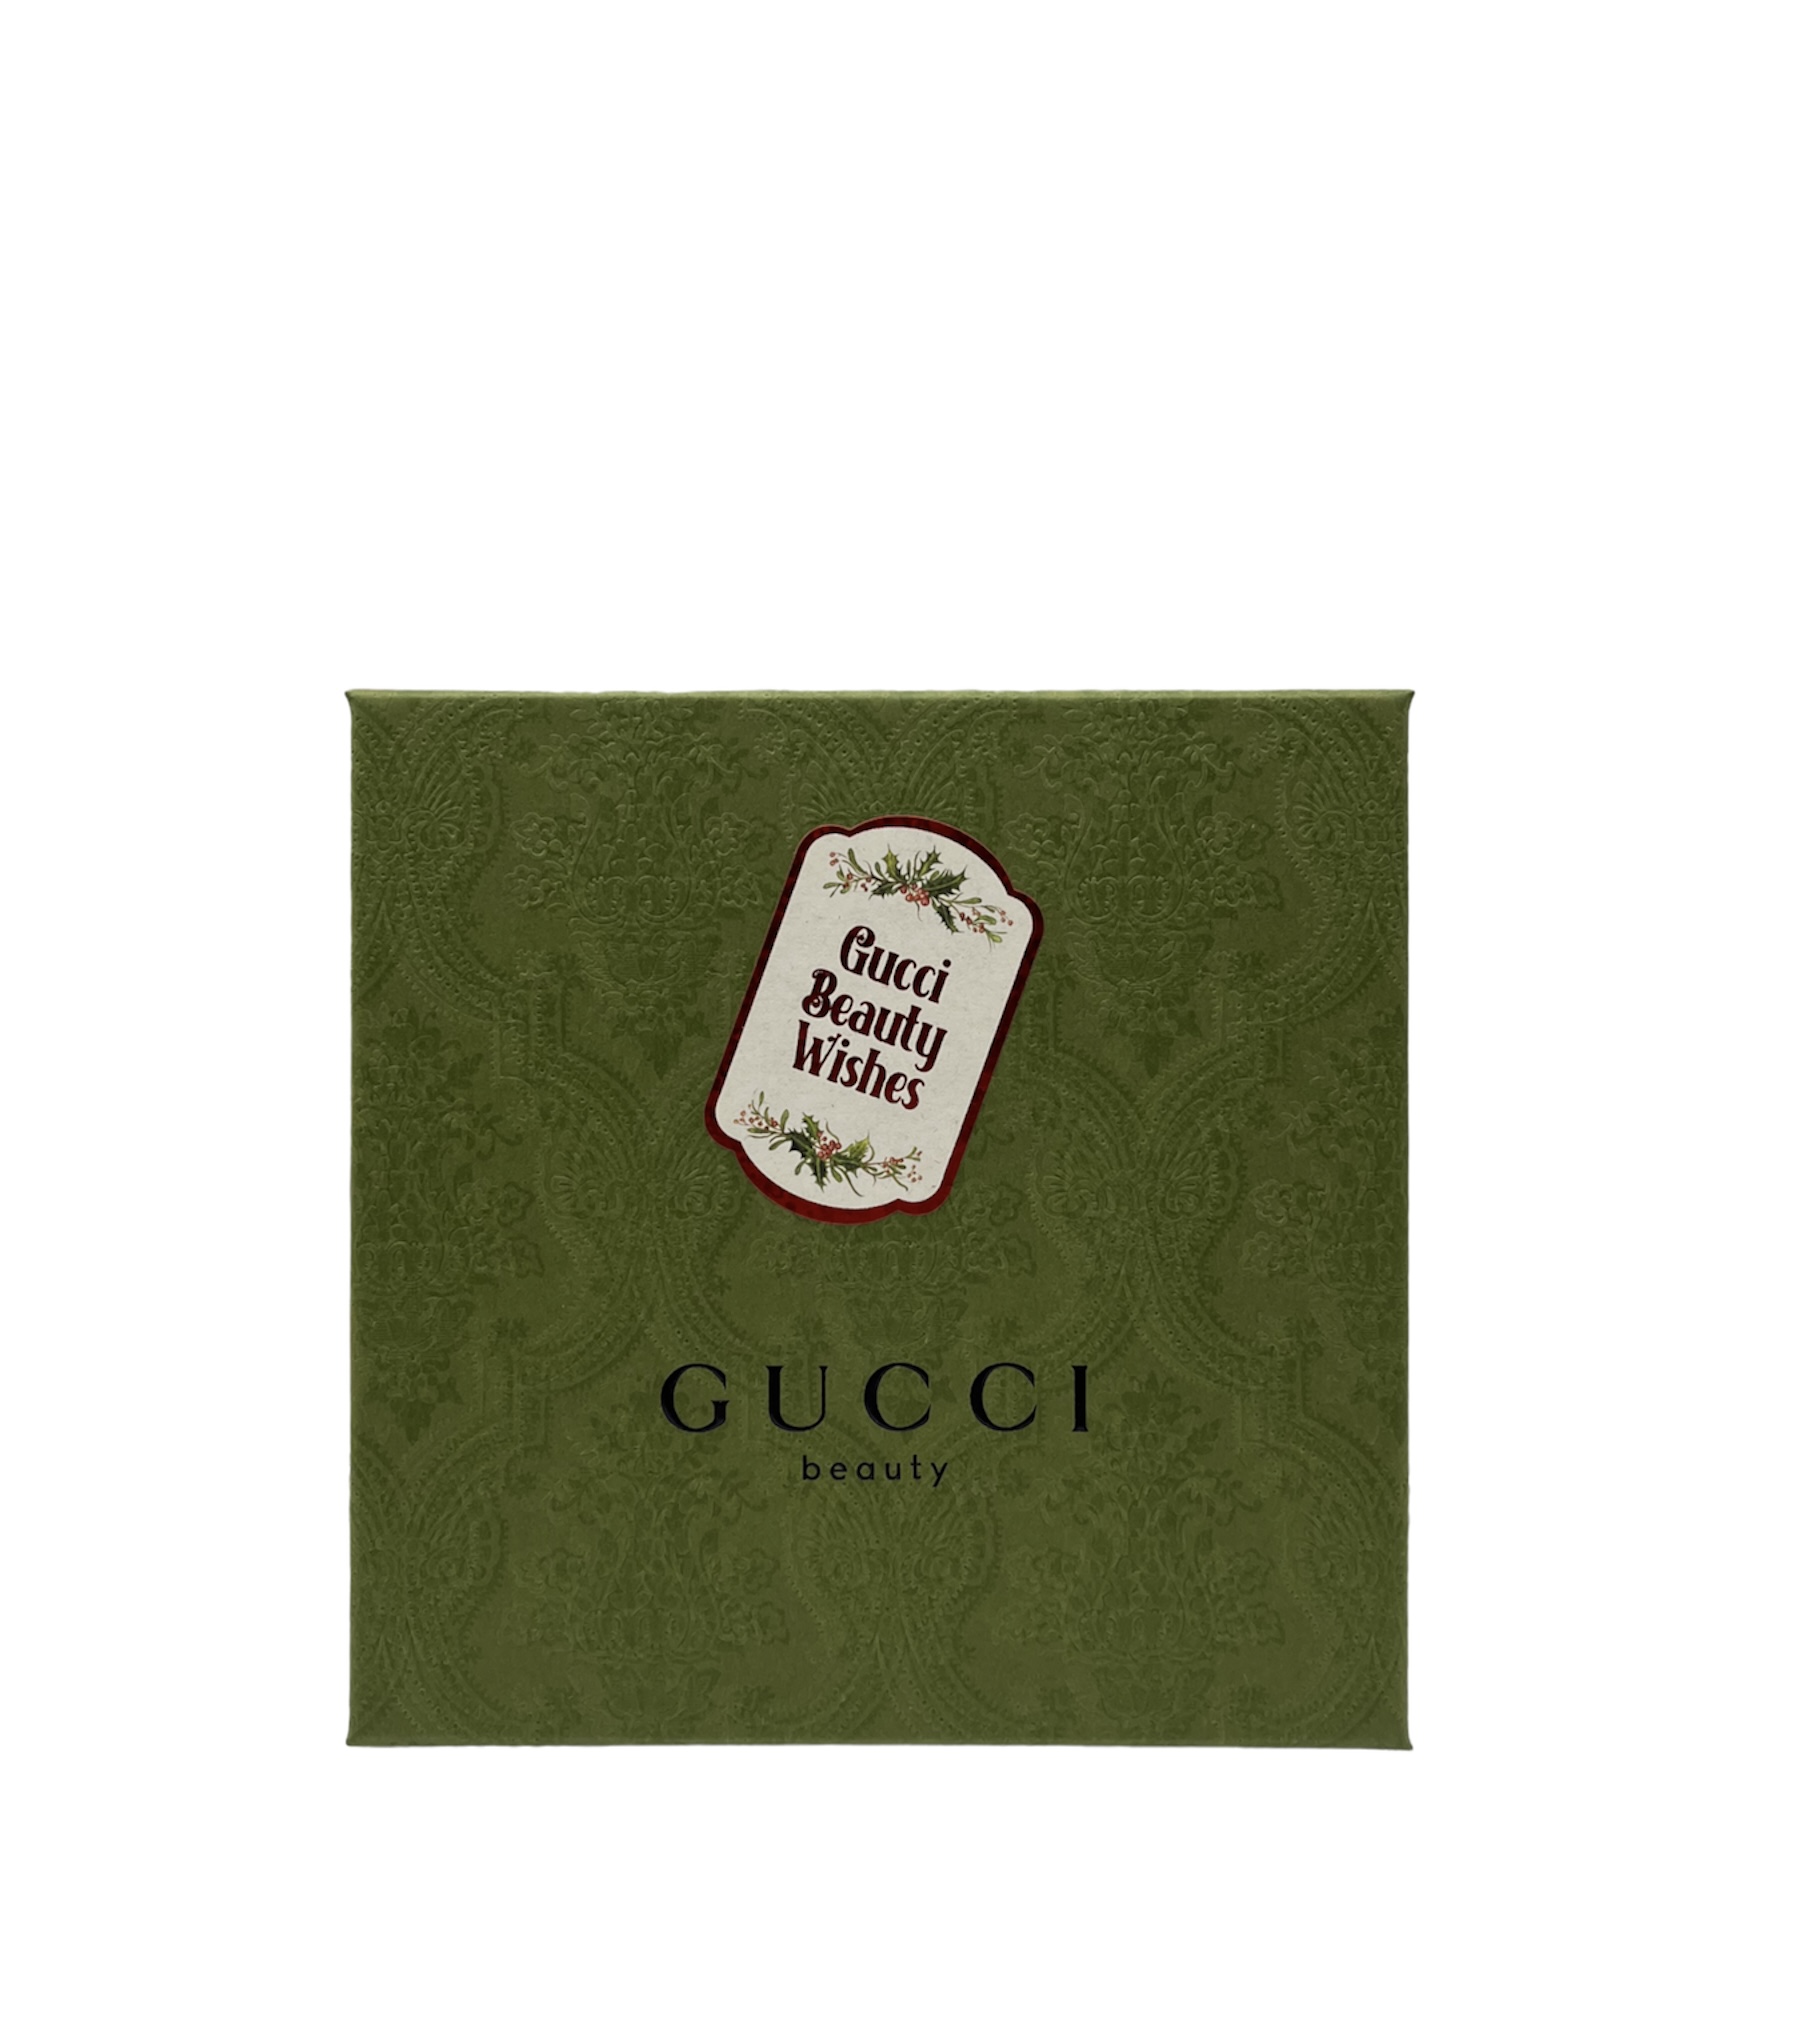 Gucci Guilty Femme Duftset  Eau de Toilette 50ml + EDT 10ml